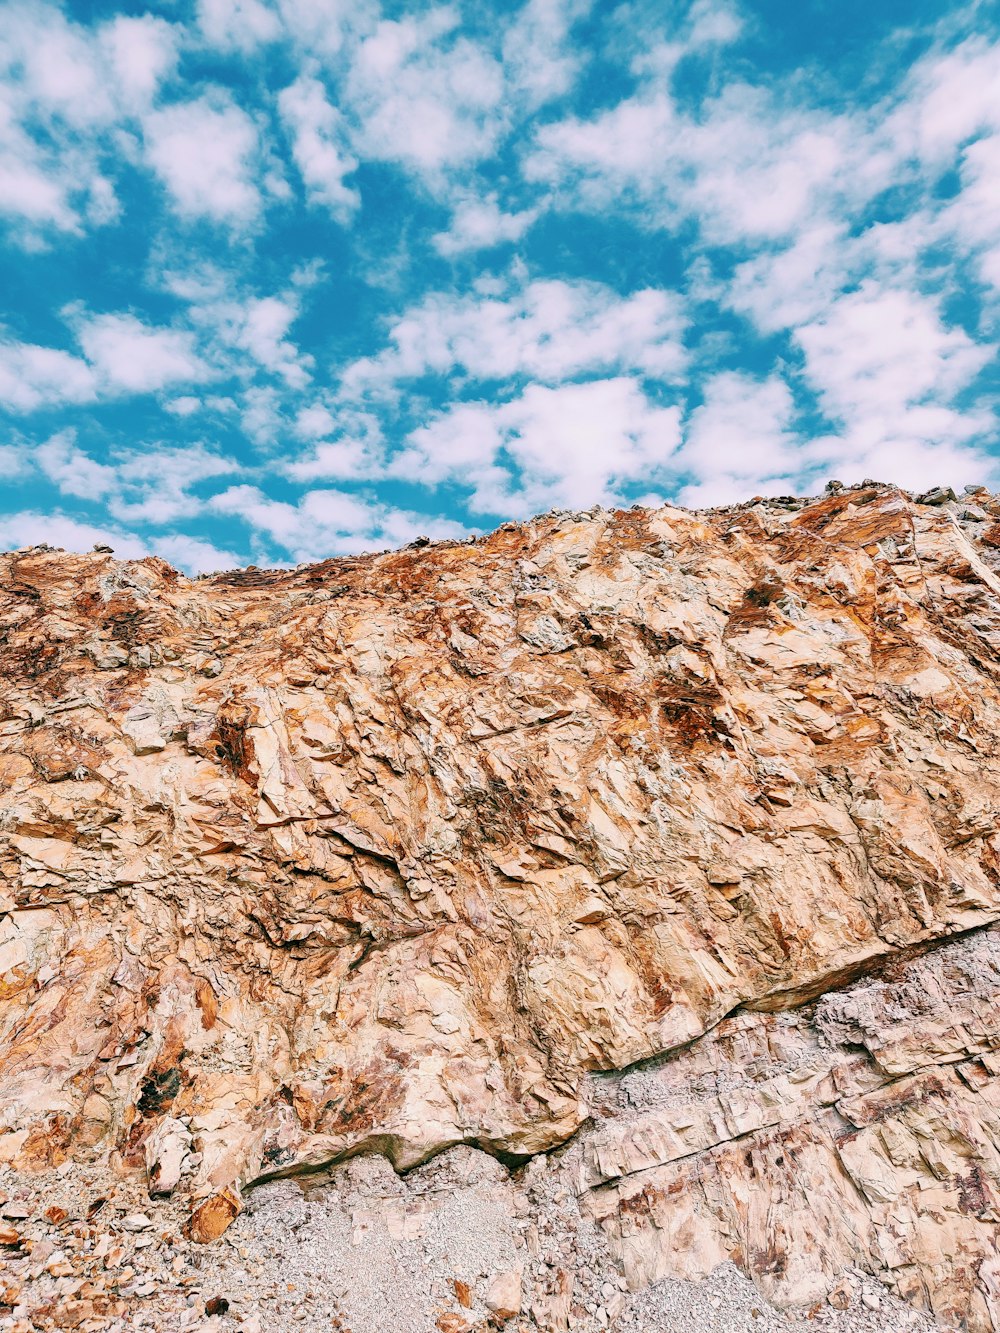 Formación rocosa marrón bajo el cielo azul y nubes blancas durante el día